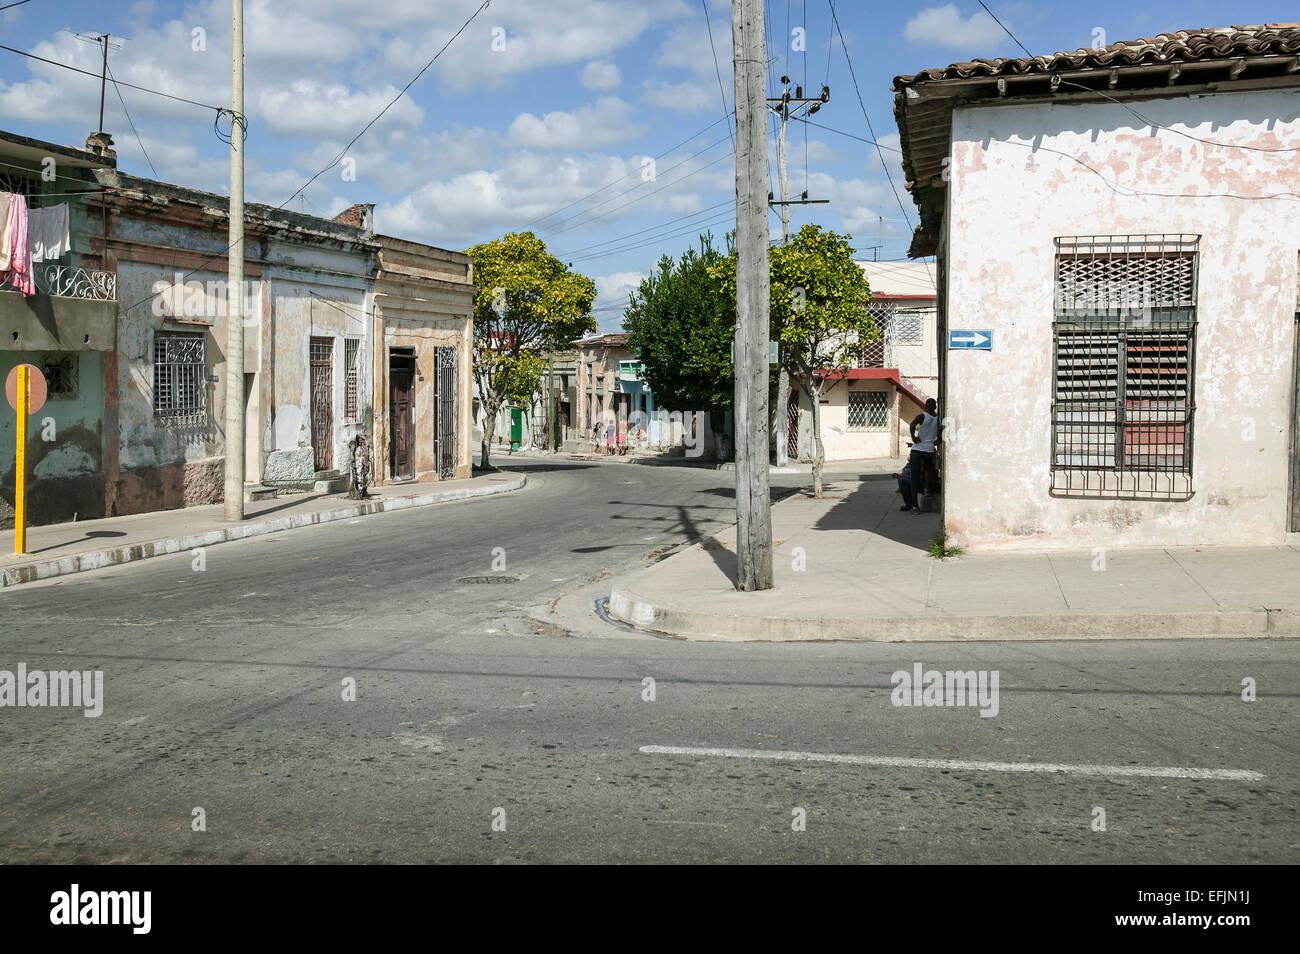 Strada residenziale e angolo con tetto piatto weathered stucco case, una strada a freccia e cubani locali sul marciapiede, Cienfuegos, Cuba. Foto Stock